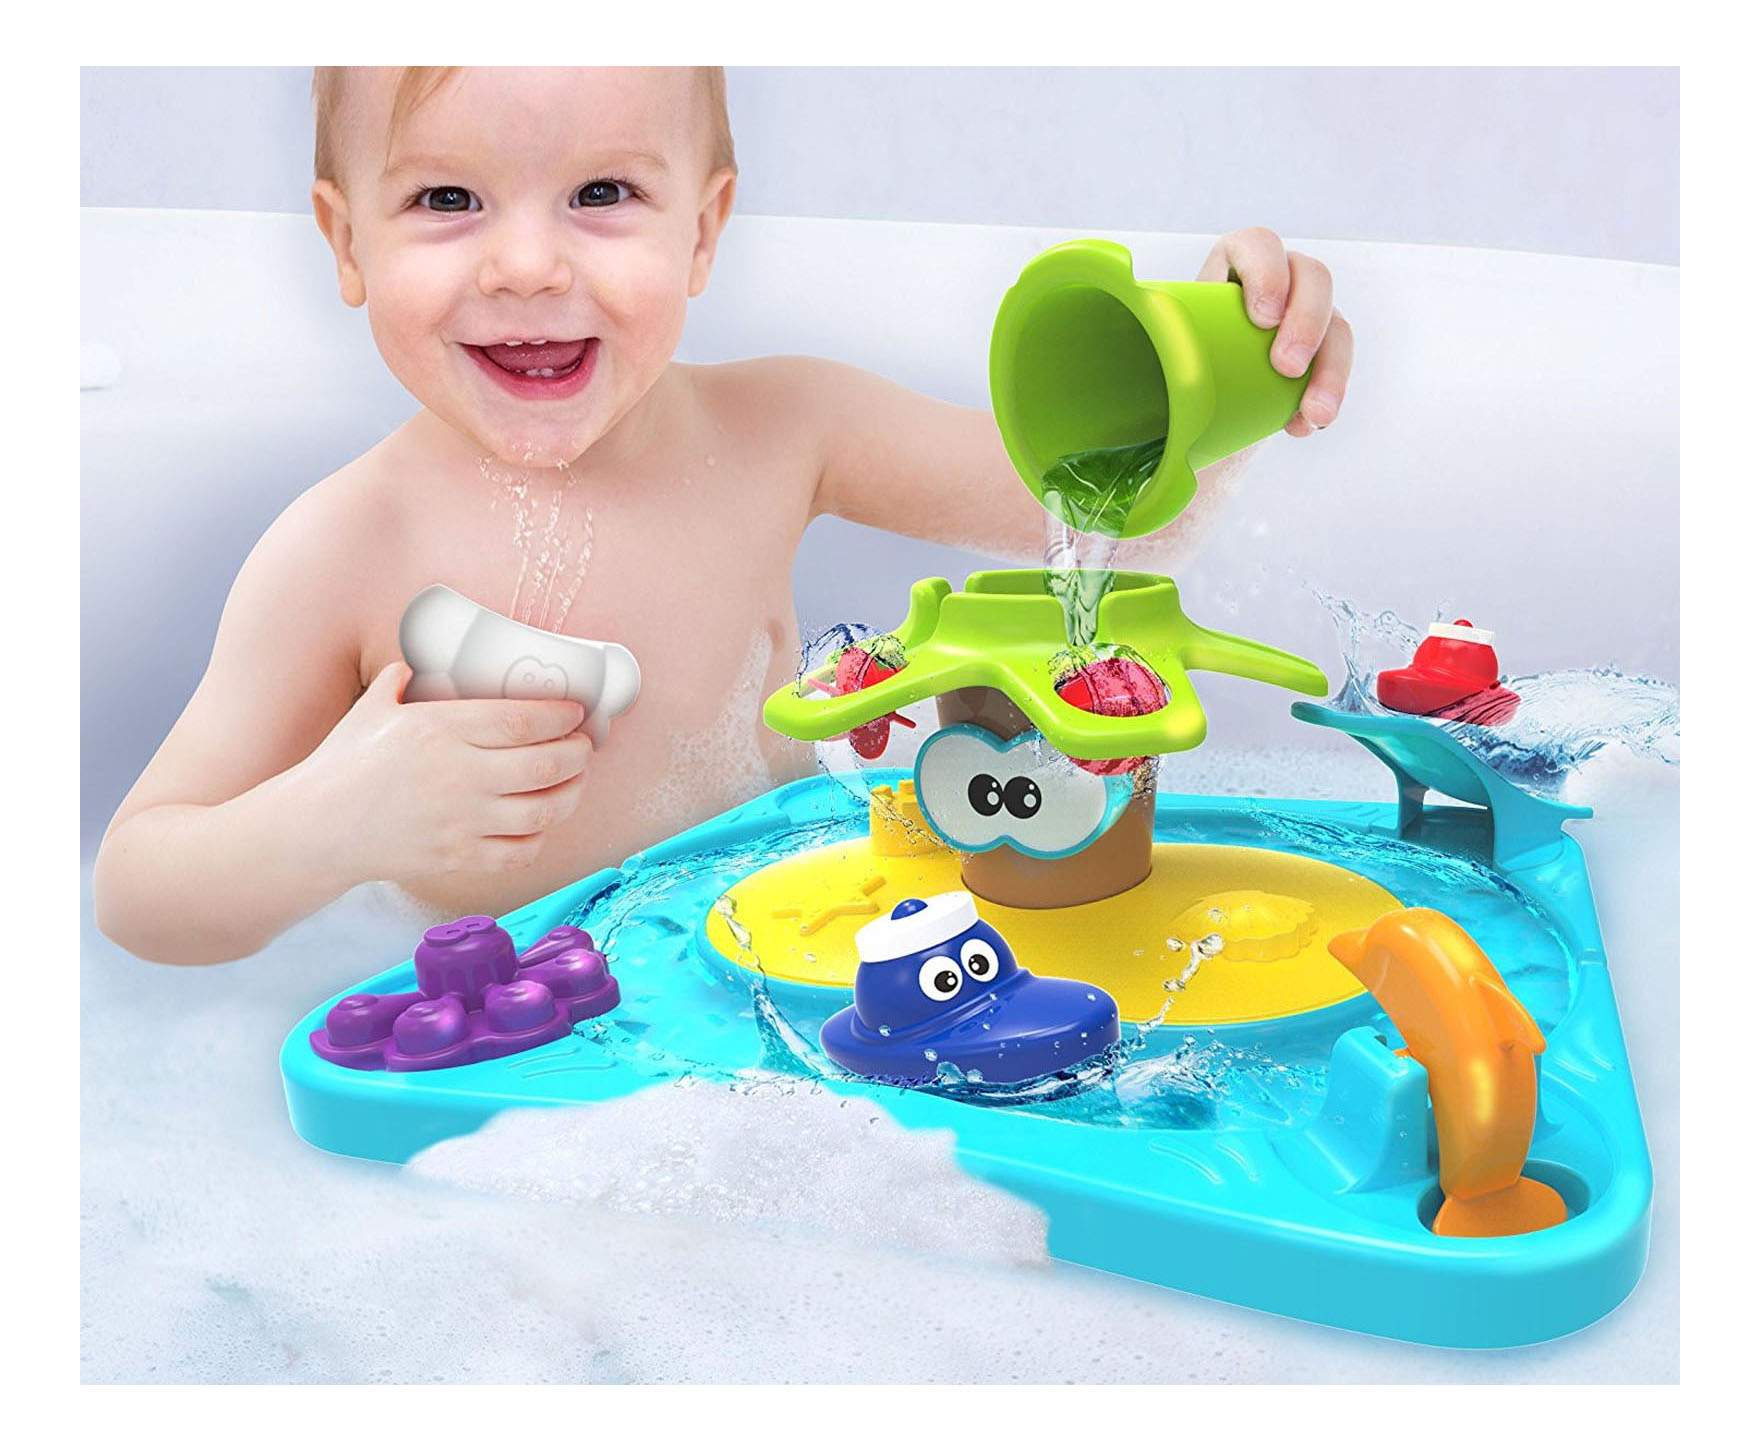 Игрушка для купания в ванне. Детская игрушка для ванны. Игрушки для купания малышей. Интересные игрушки для ванной. Игрушки в ванную для детей.